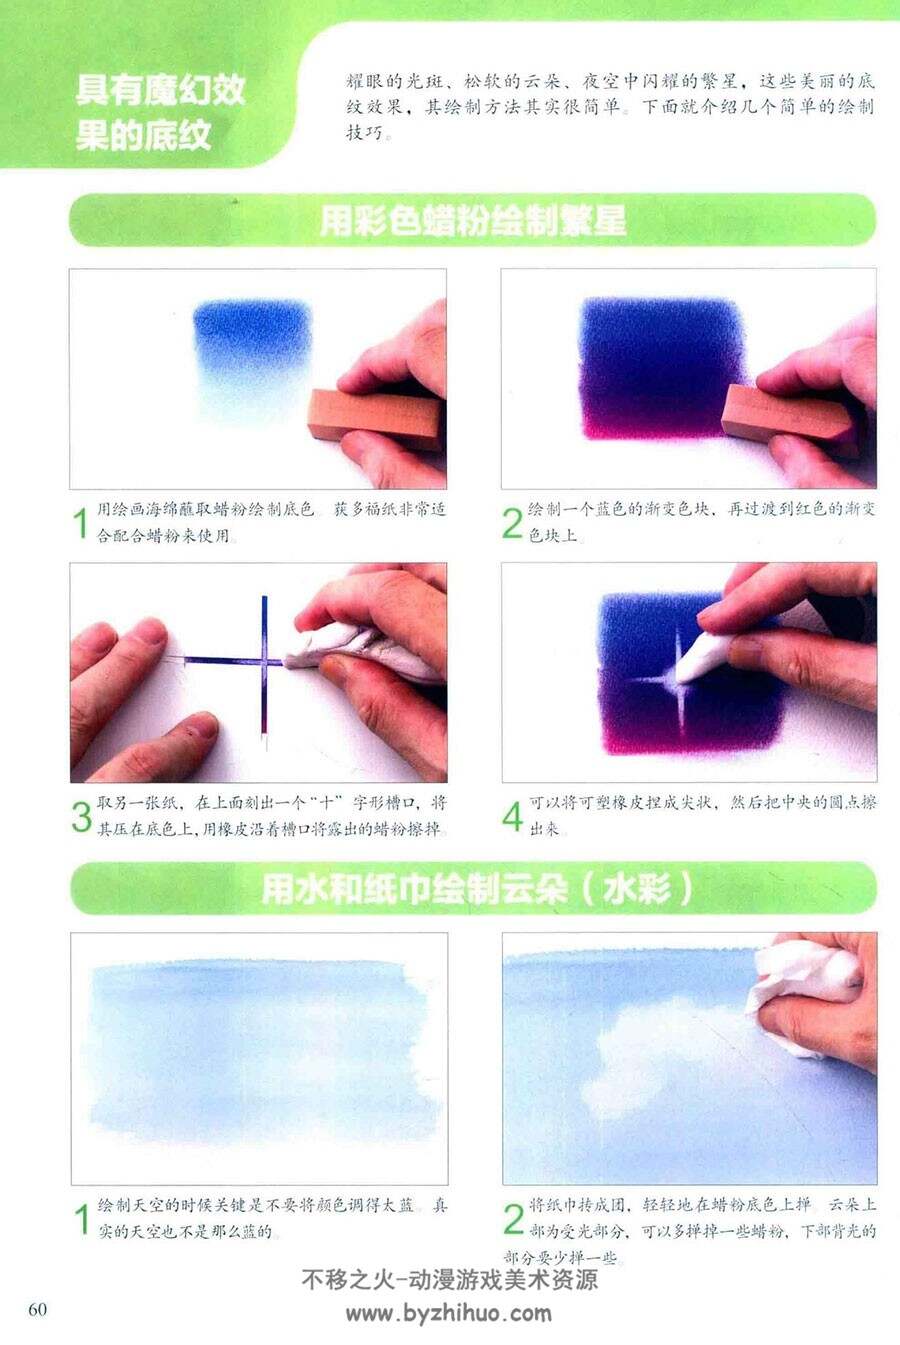 水彩画技法的魔力 光与水的世界 日本画师玉神辉美 水彩特效技法教程